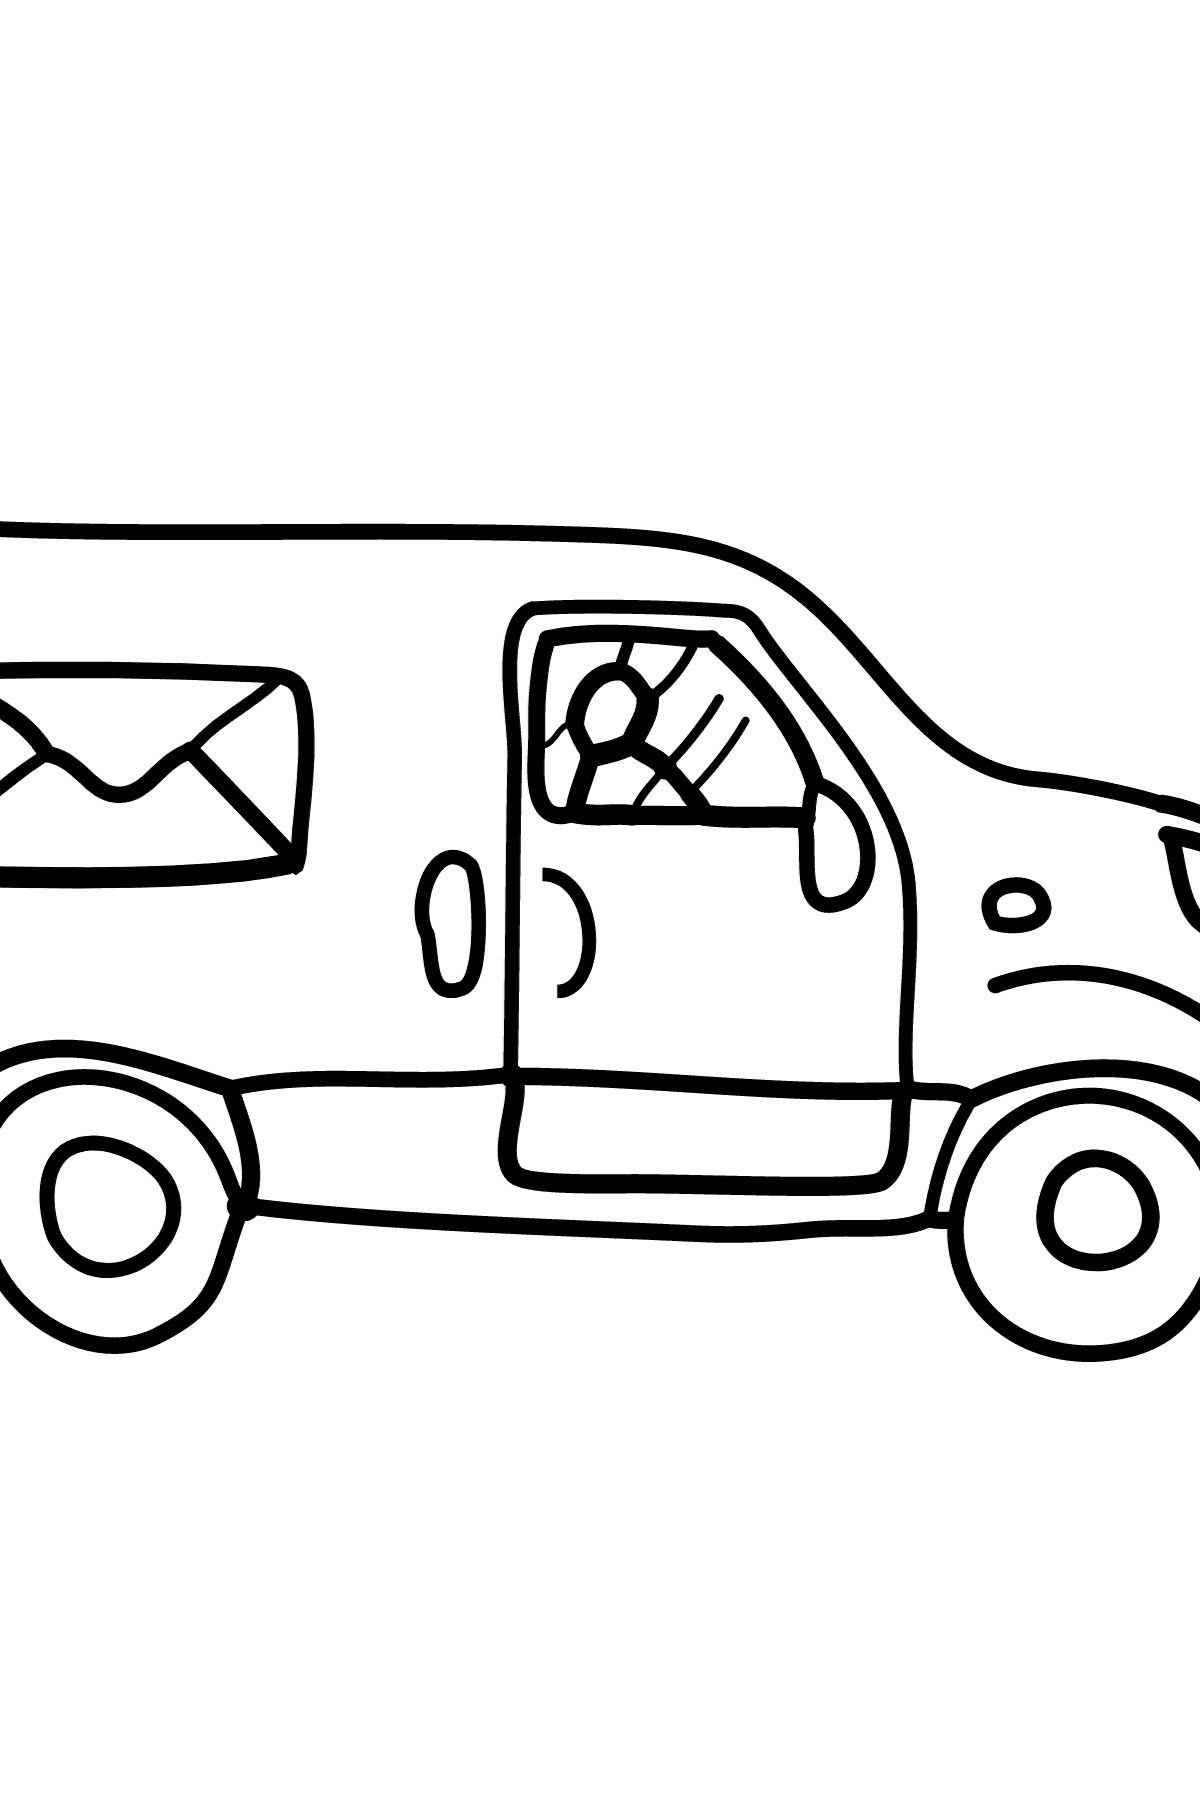 Раскраска почтовая машина - Картинки для Детей